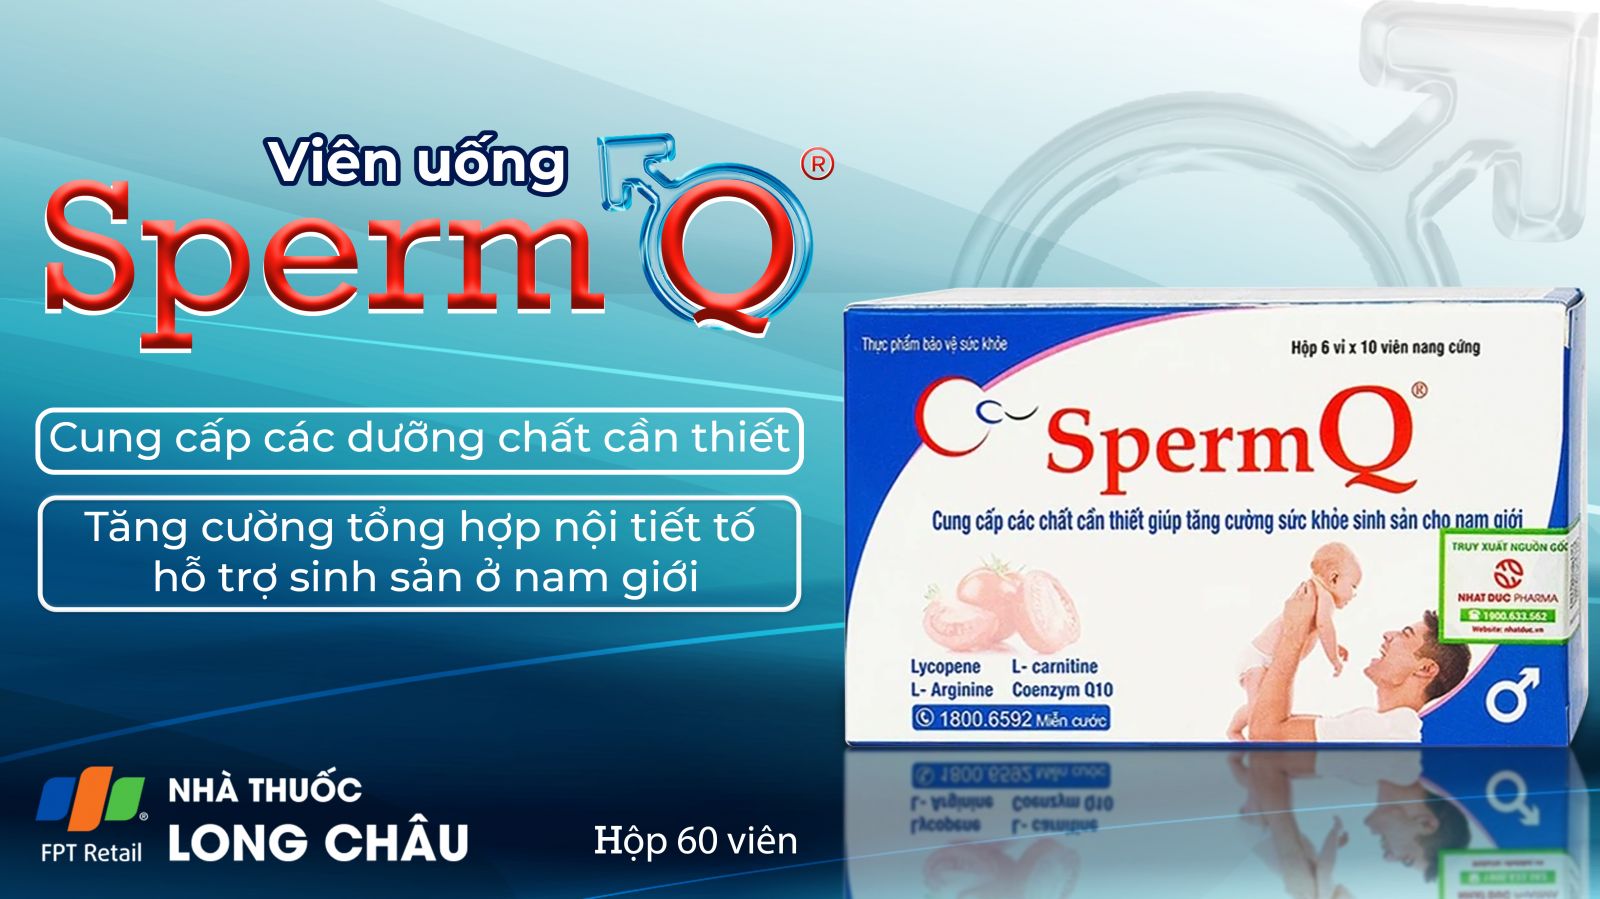 Sperm Q 2